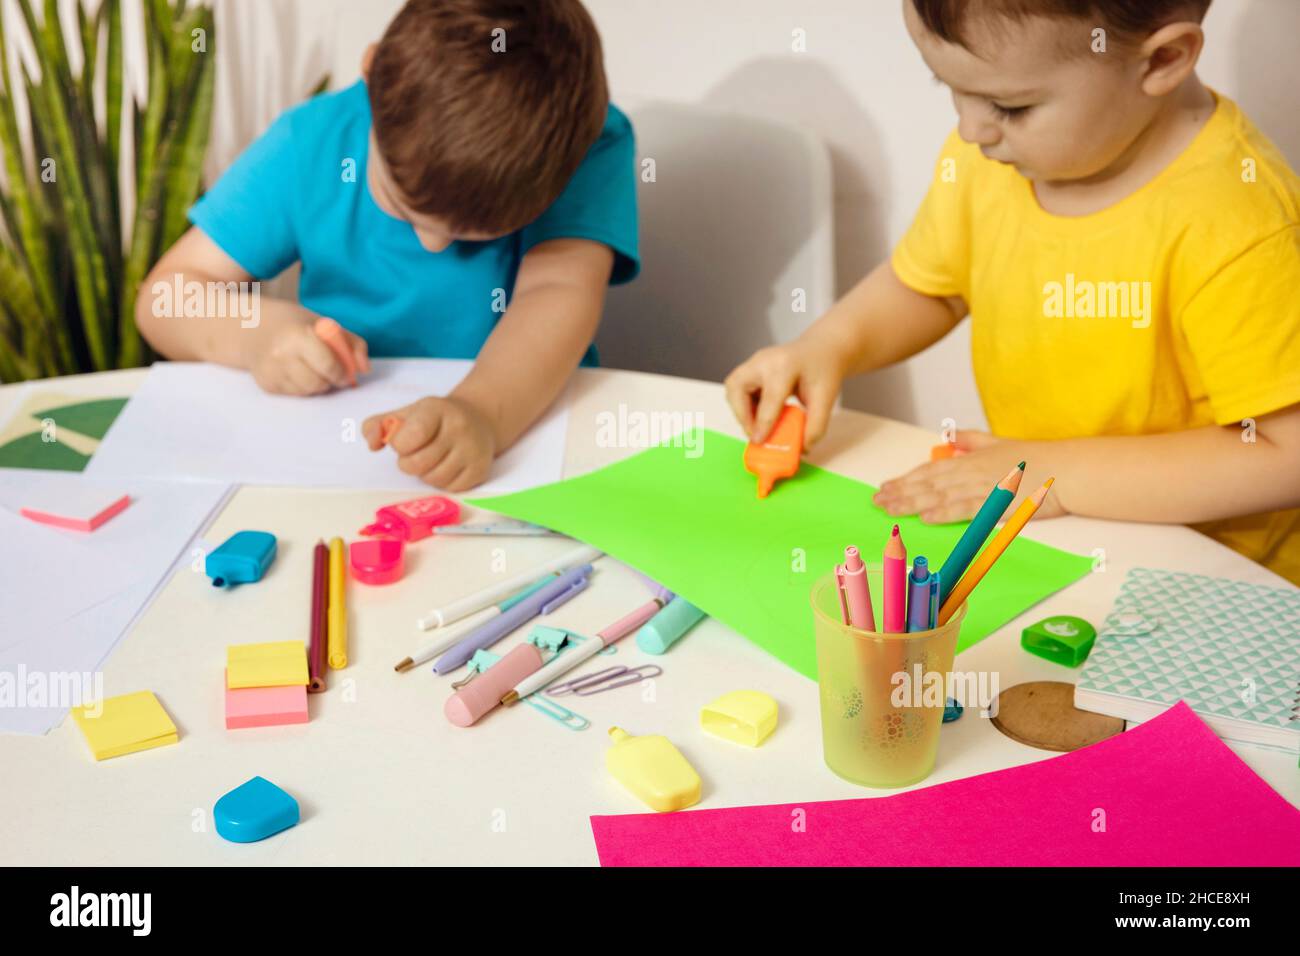 Felices niños con camisas amarillas y azules haciendo artes y artesanías juntas en su escritorio. Los niños dibujan sobre papel coloreado. Los niños juegan en casa. Foto de stock